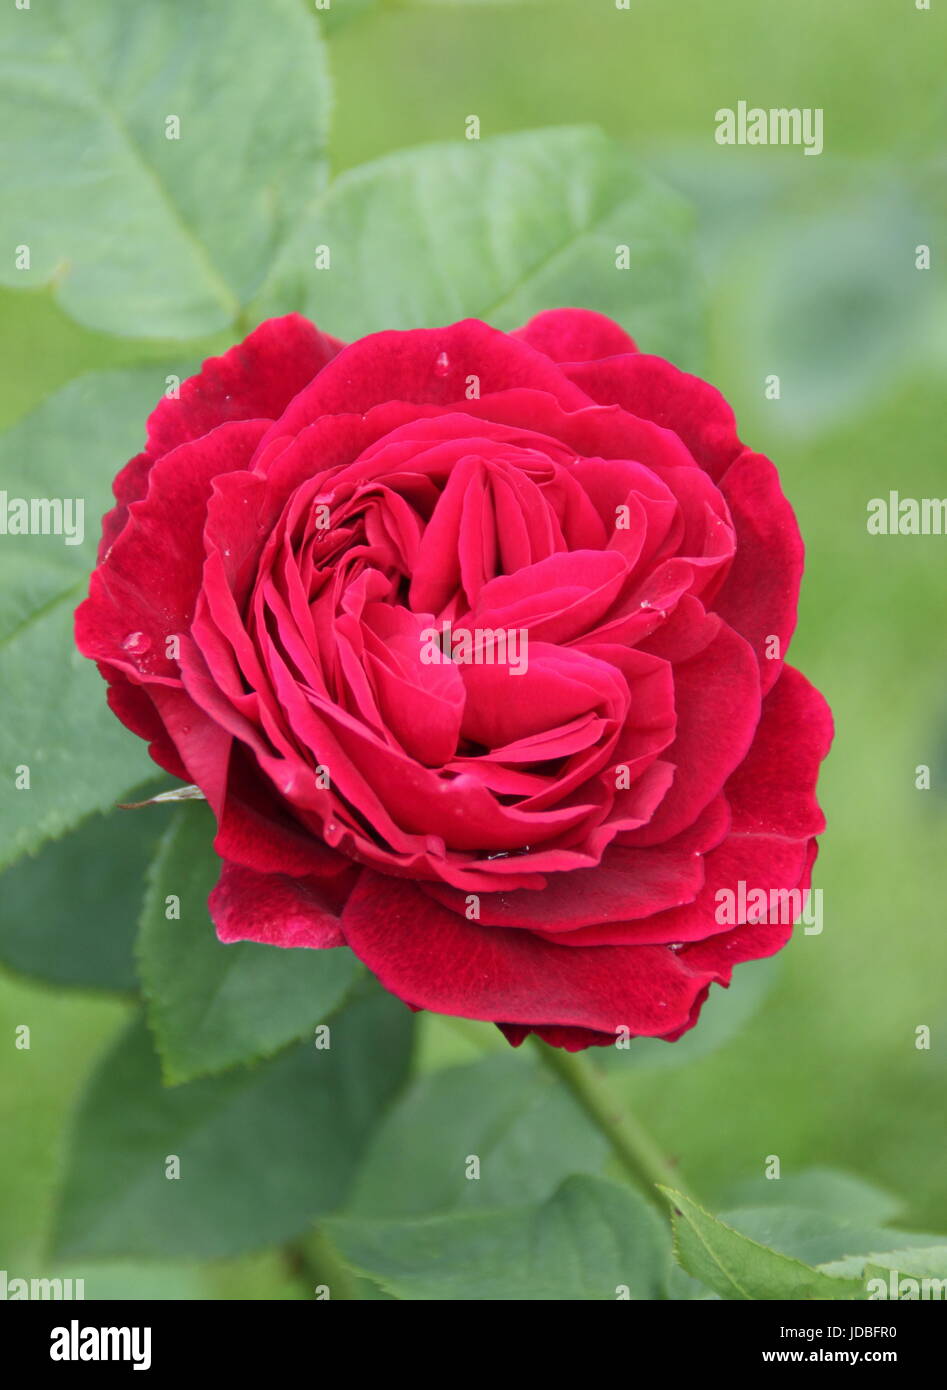 Rosa L D BRAITHWAITE, un rouge lumineux floribunda rose, la floraison en juin dans un jardin anglais Banque D'Images